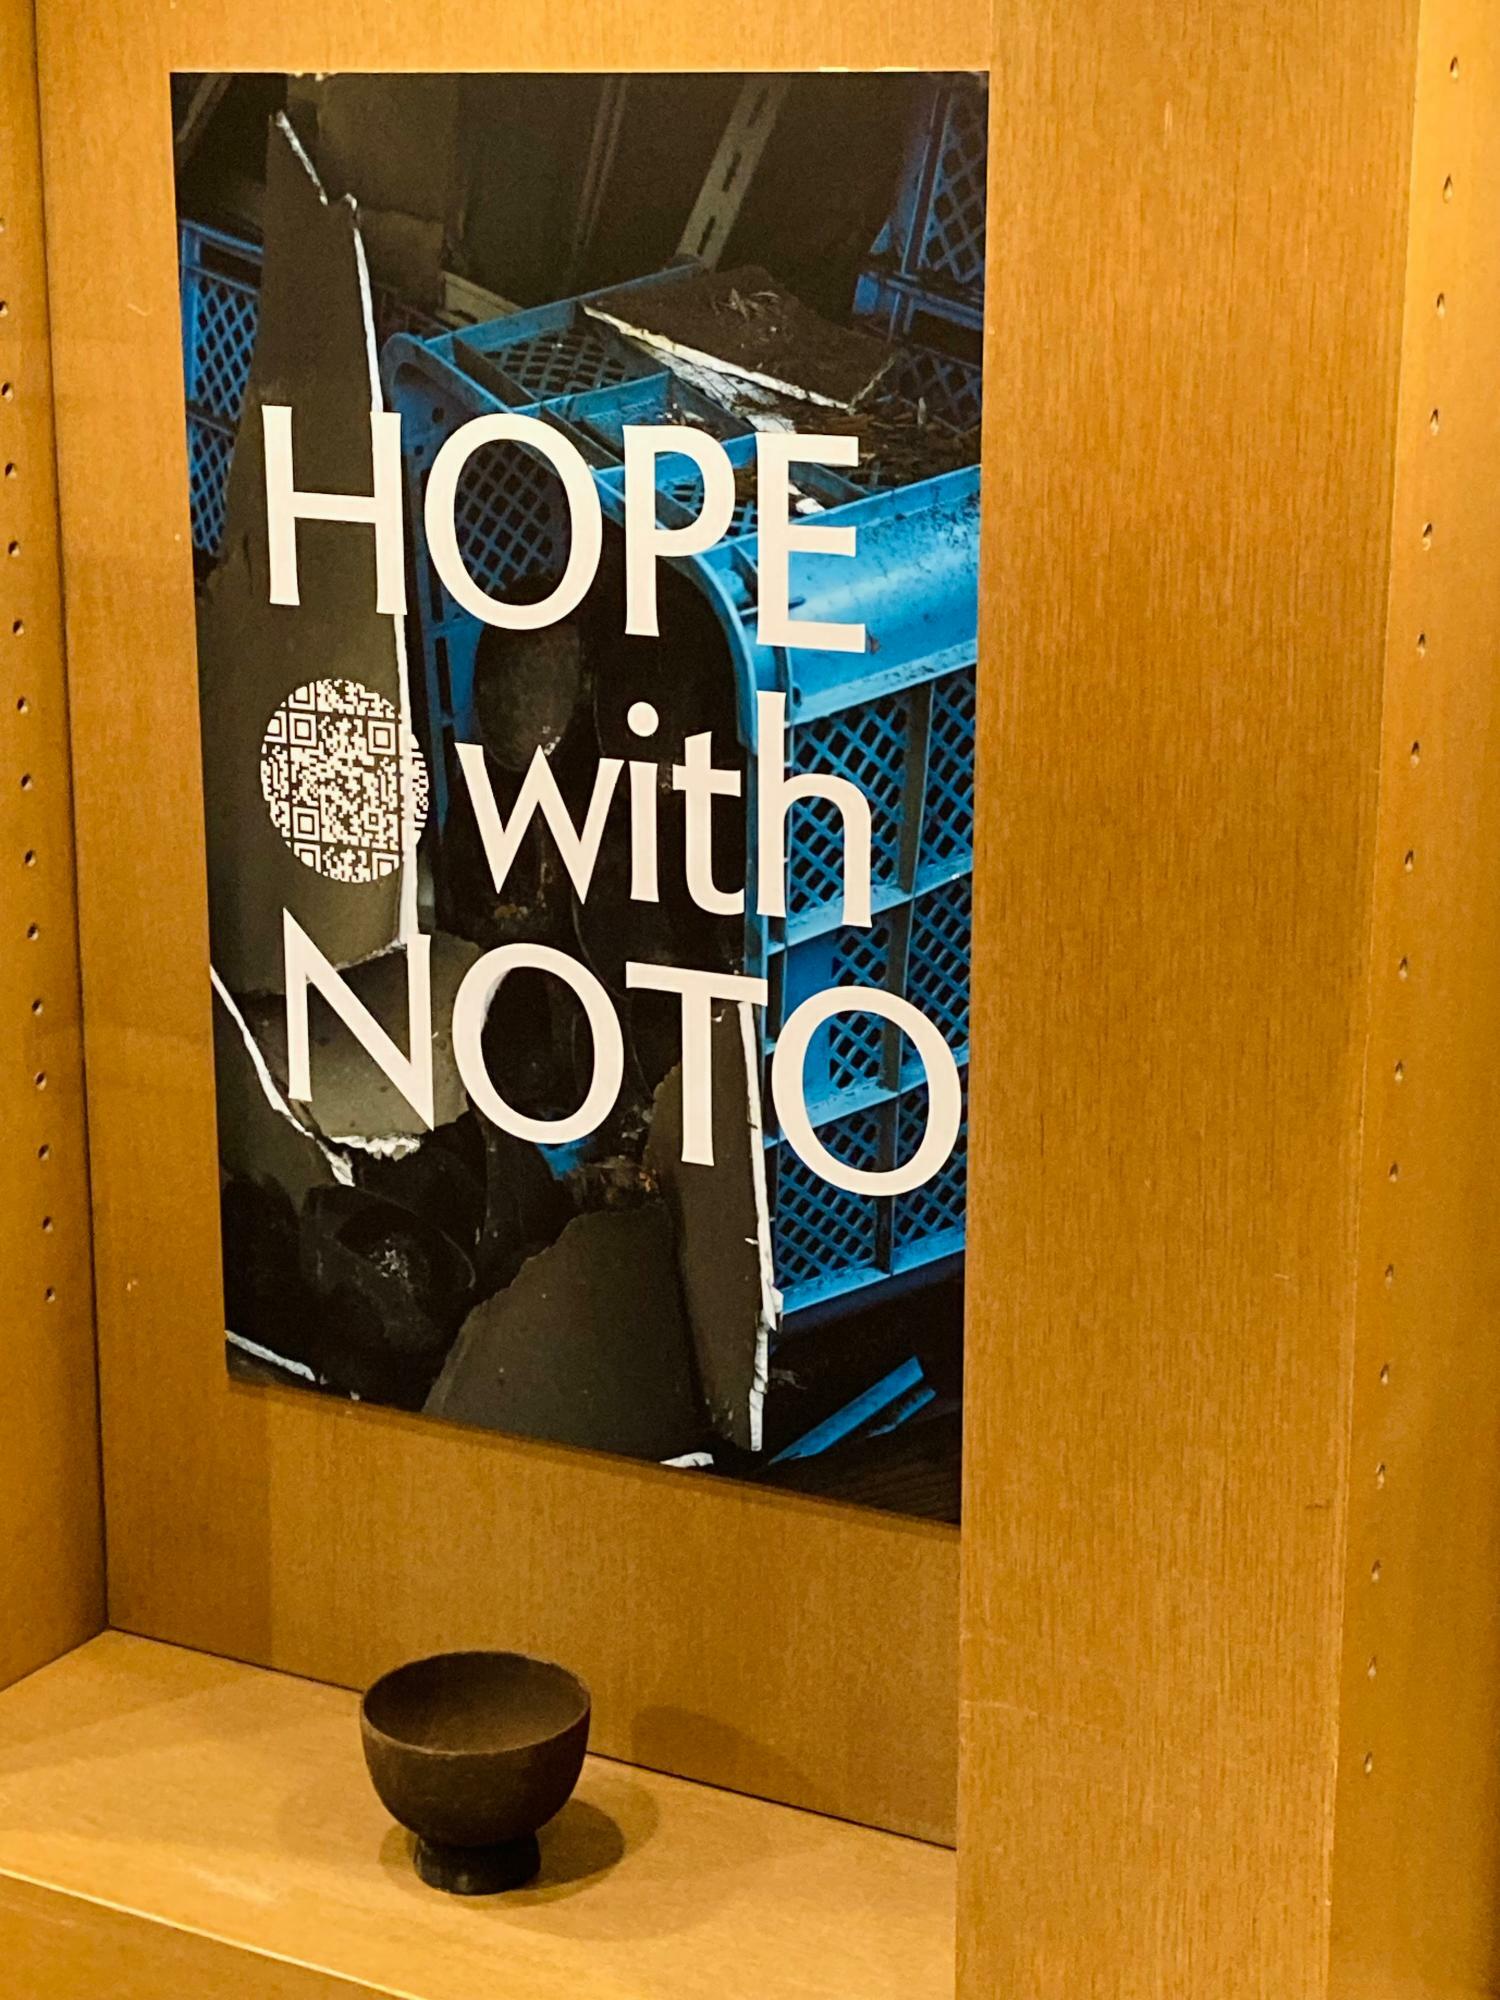 HOPE with NOTOの展示の中の輪島塗の器。震災のがれきの中から救い出されたもの。埃や土をかぶってしまったため、くすんで見える